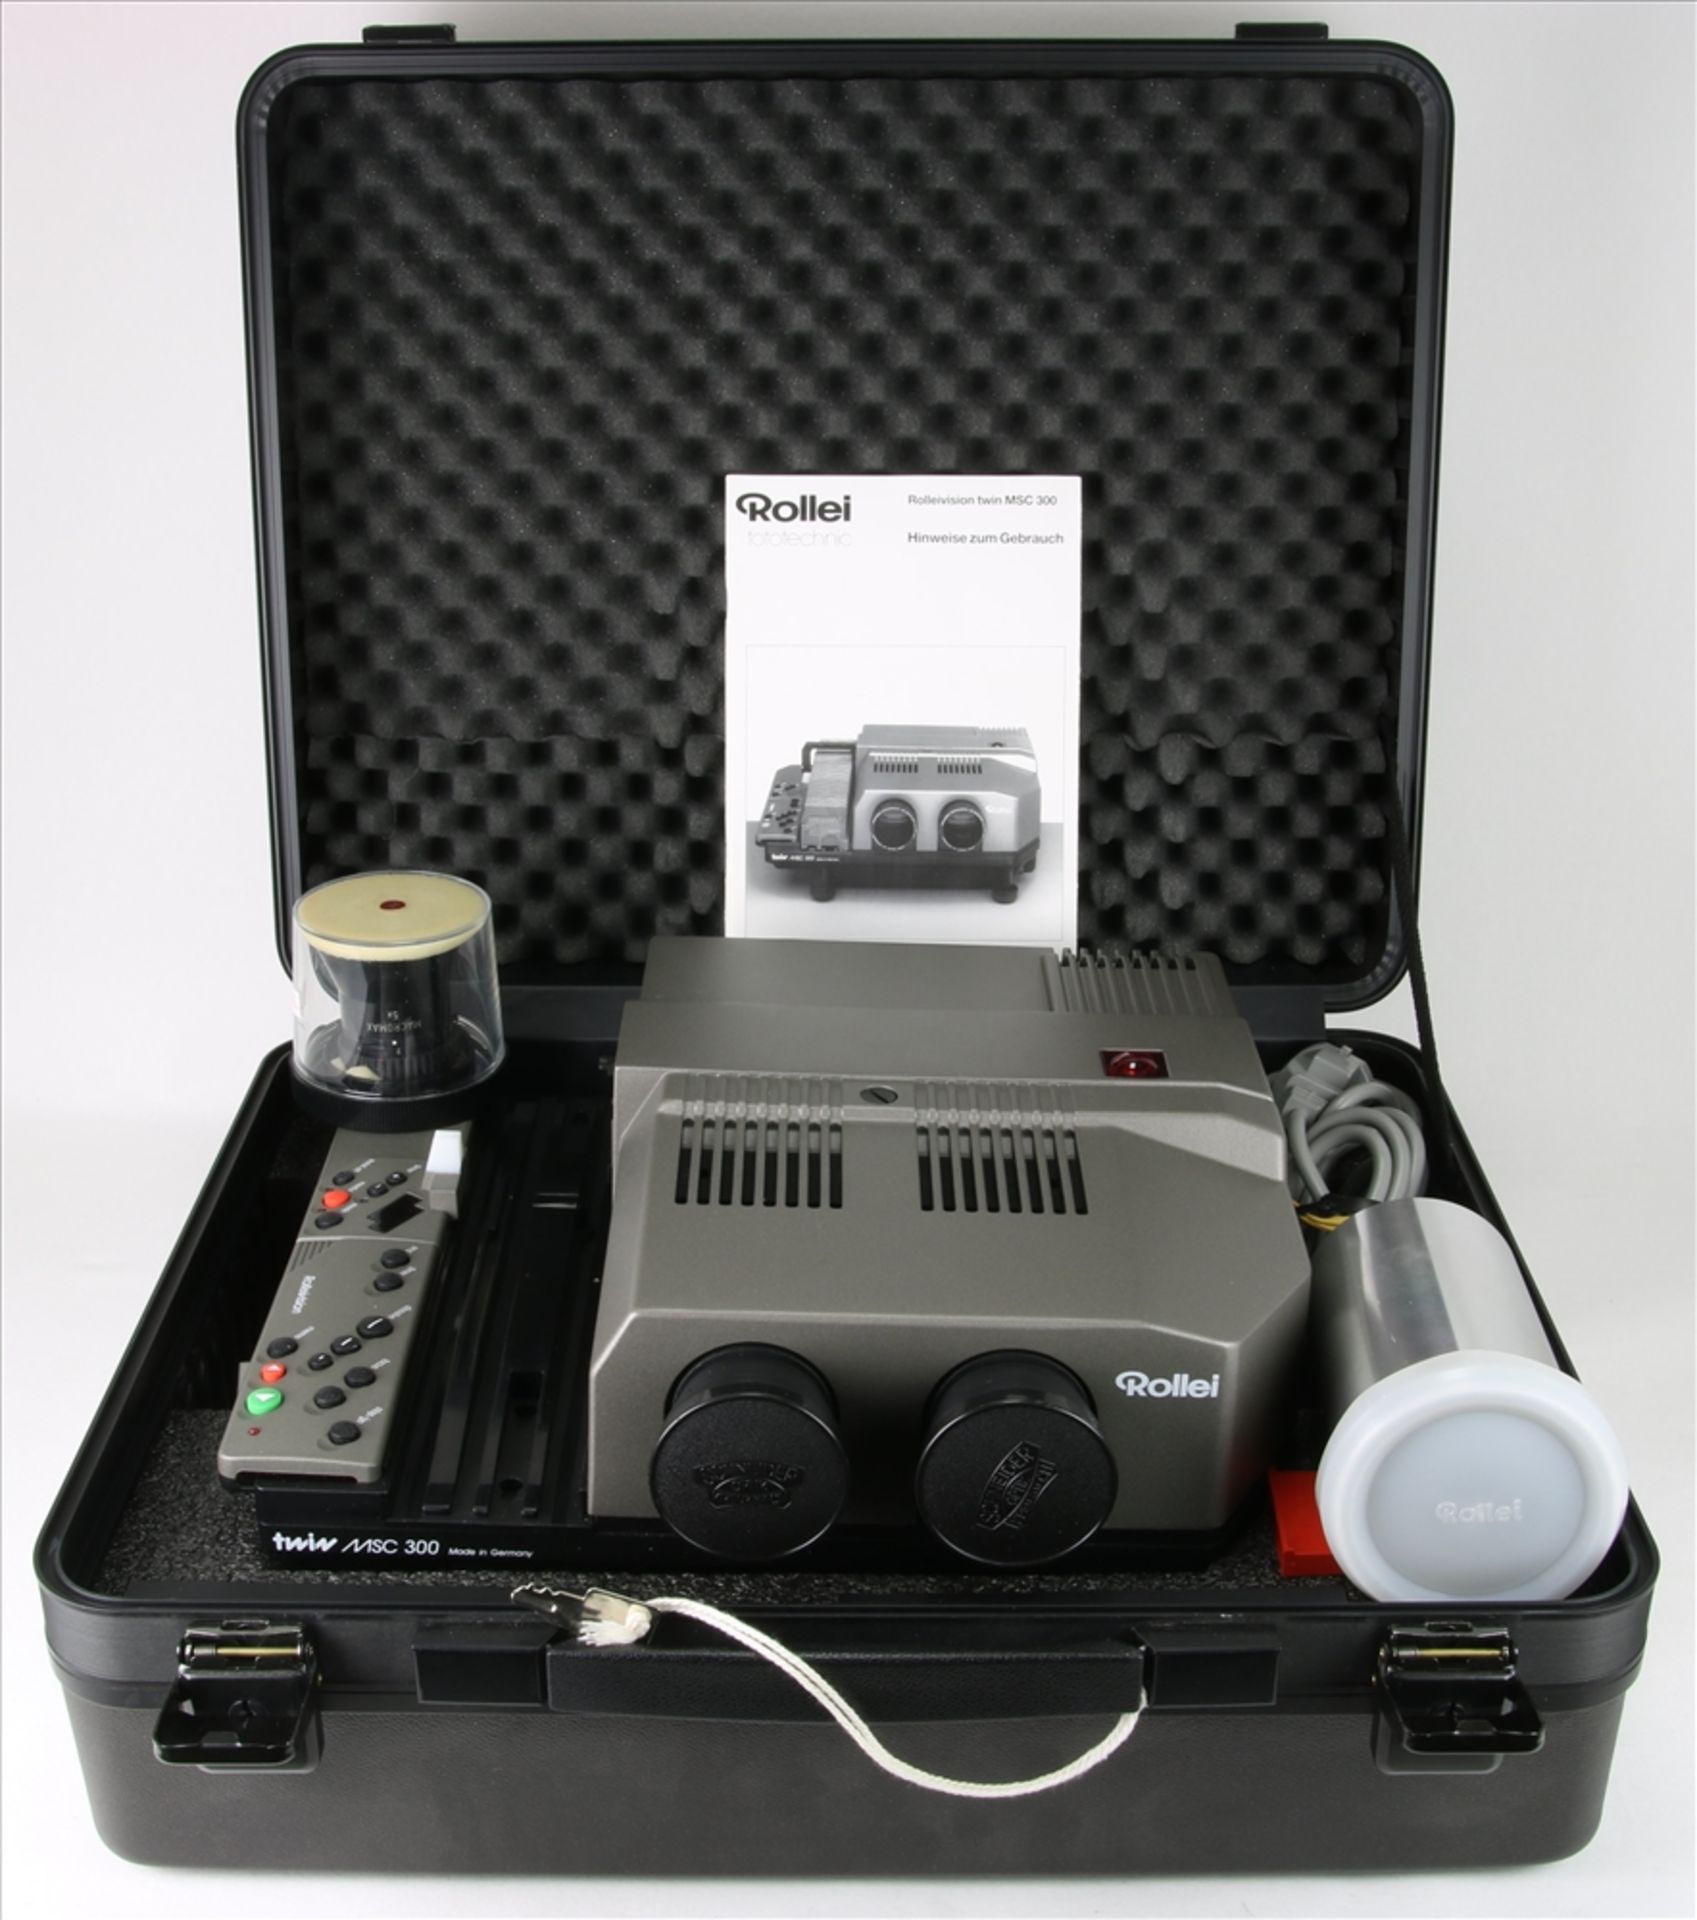 Rollei Diaprojektor Rolleivision twin MSC 300. Mit Zubehör in originalem Koffer. Nicht geprüft.